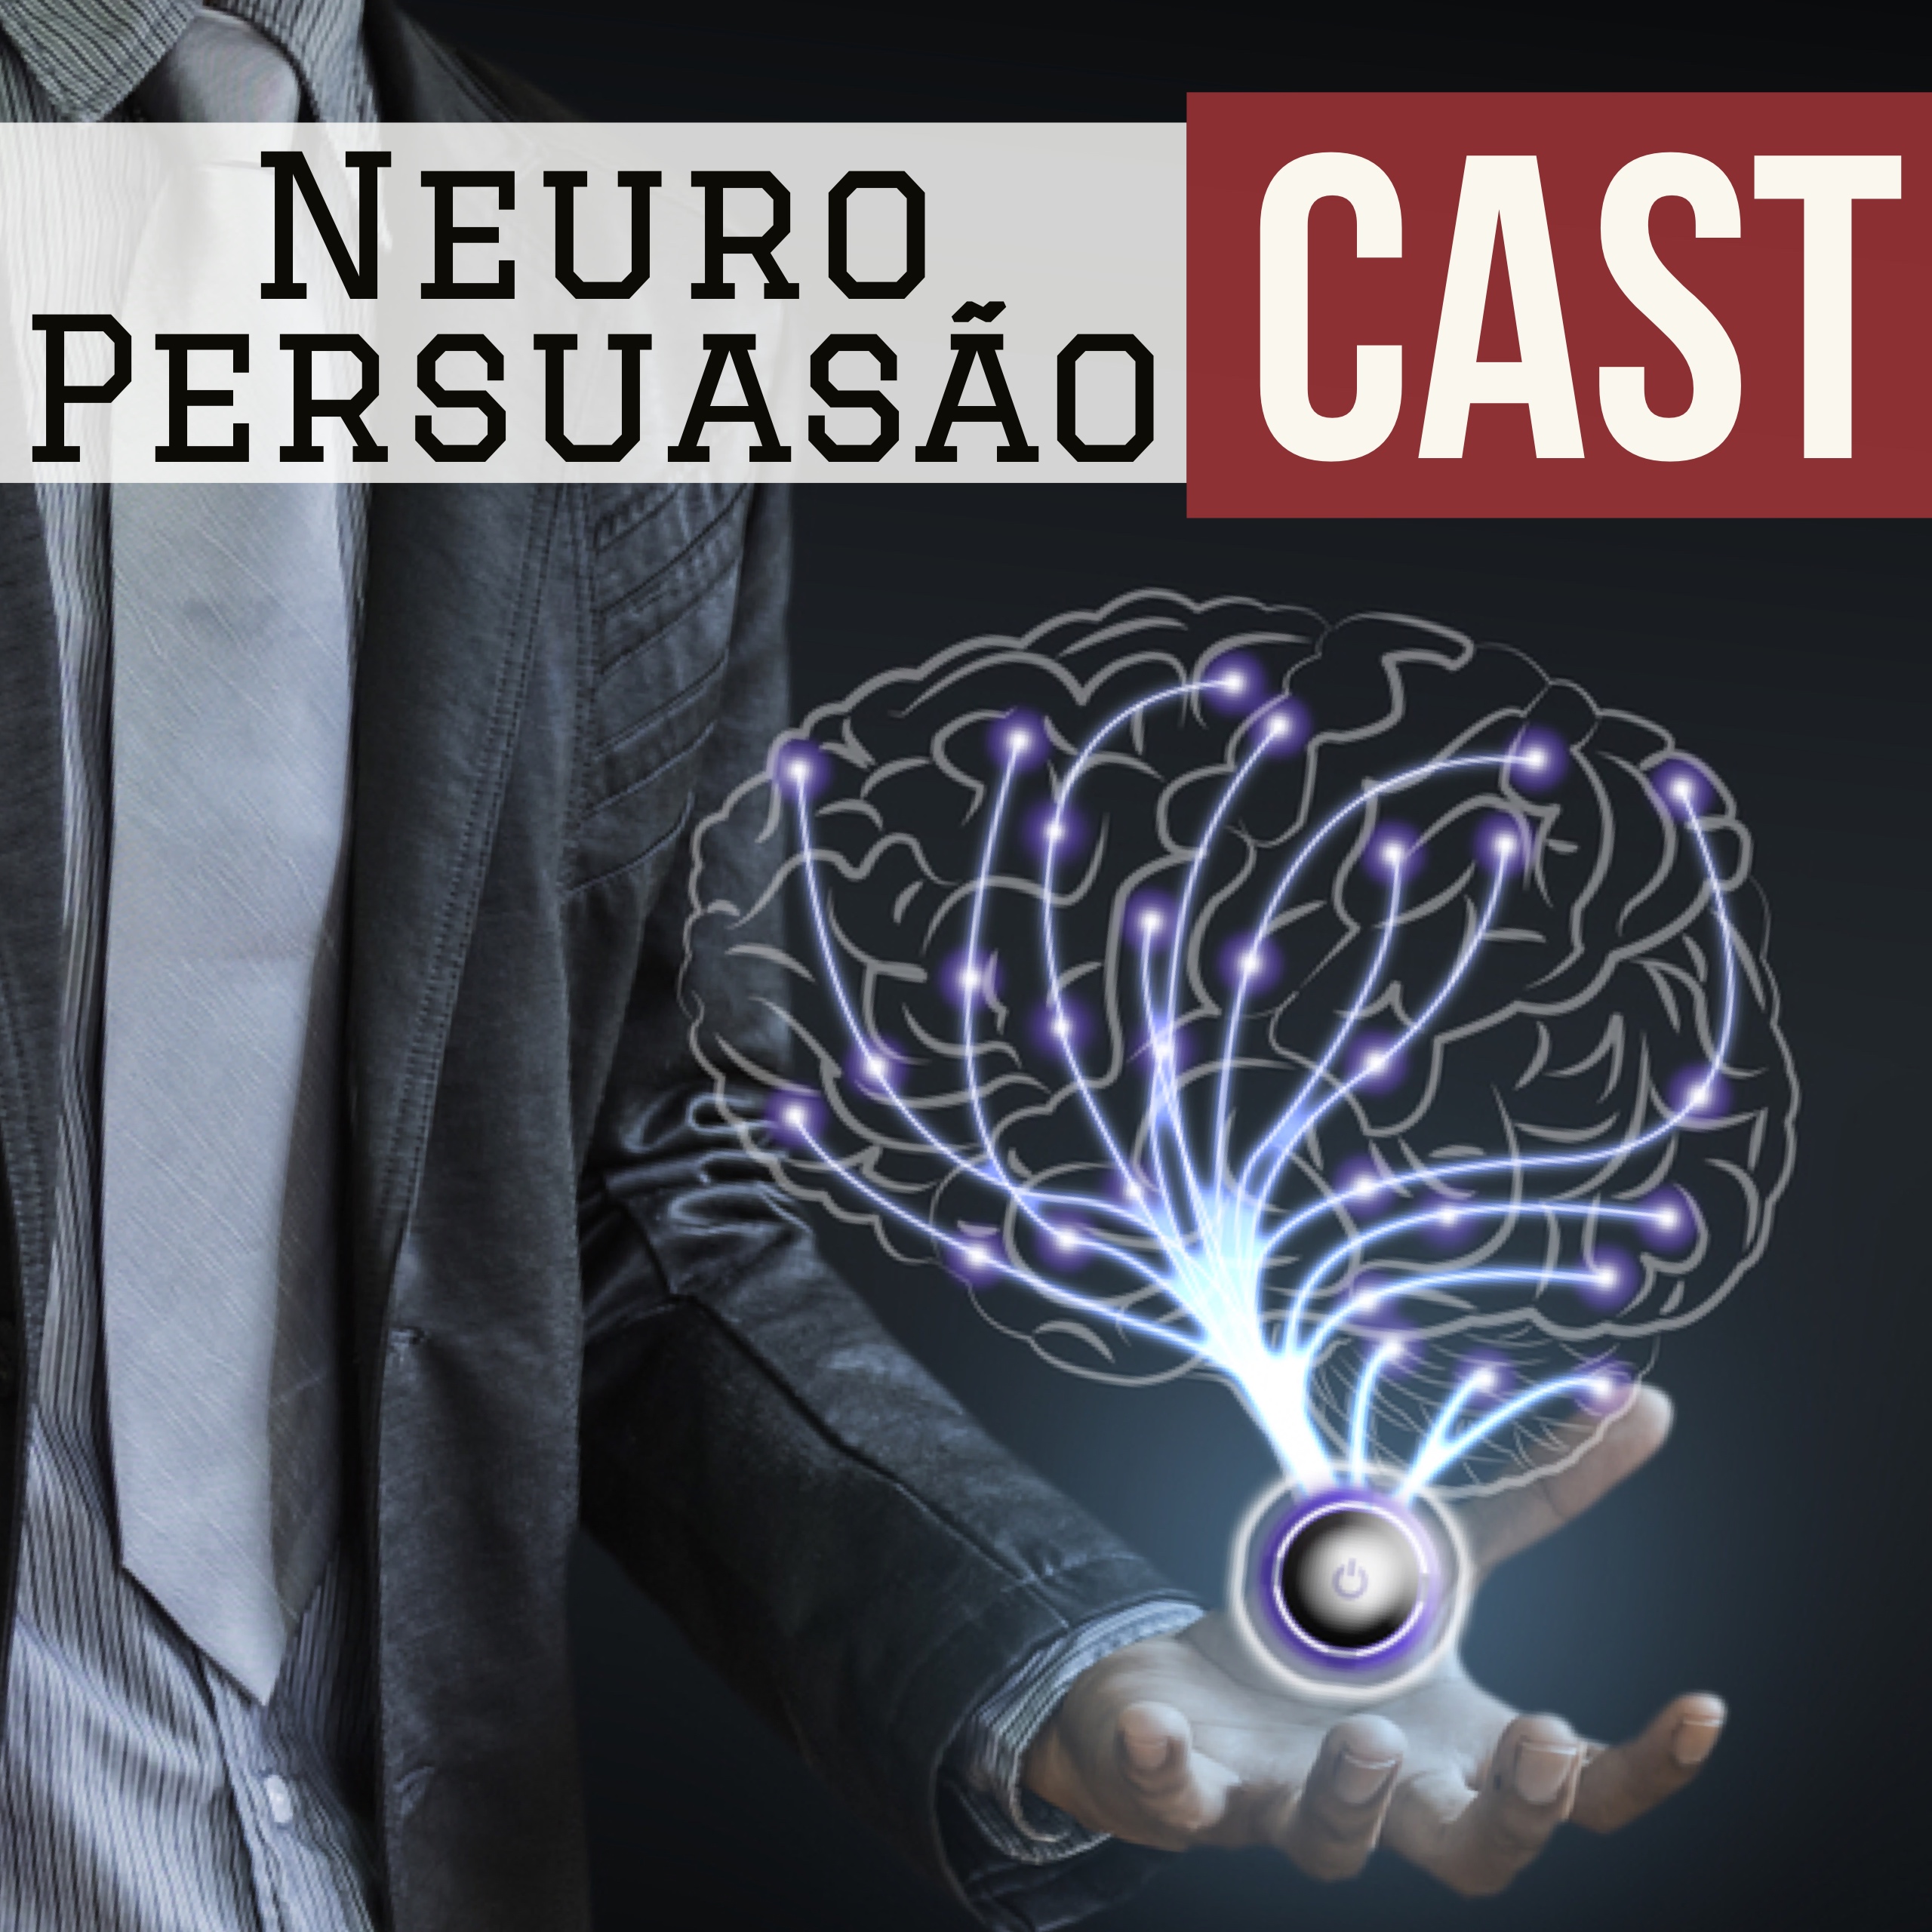 Neuro Persuasão Cast